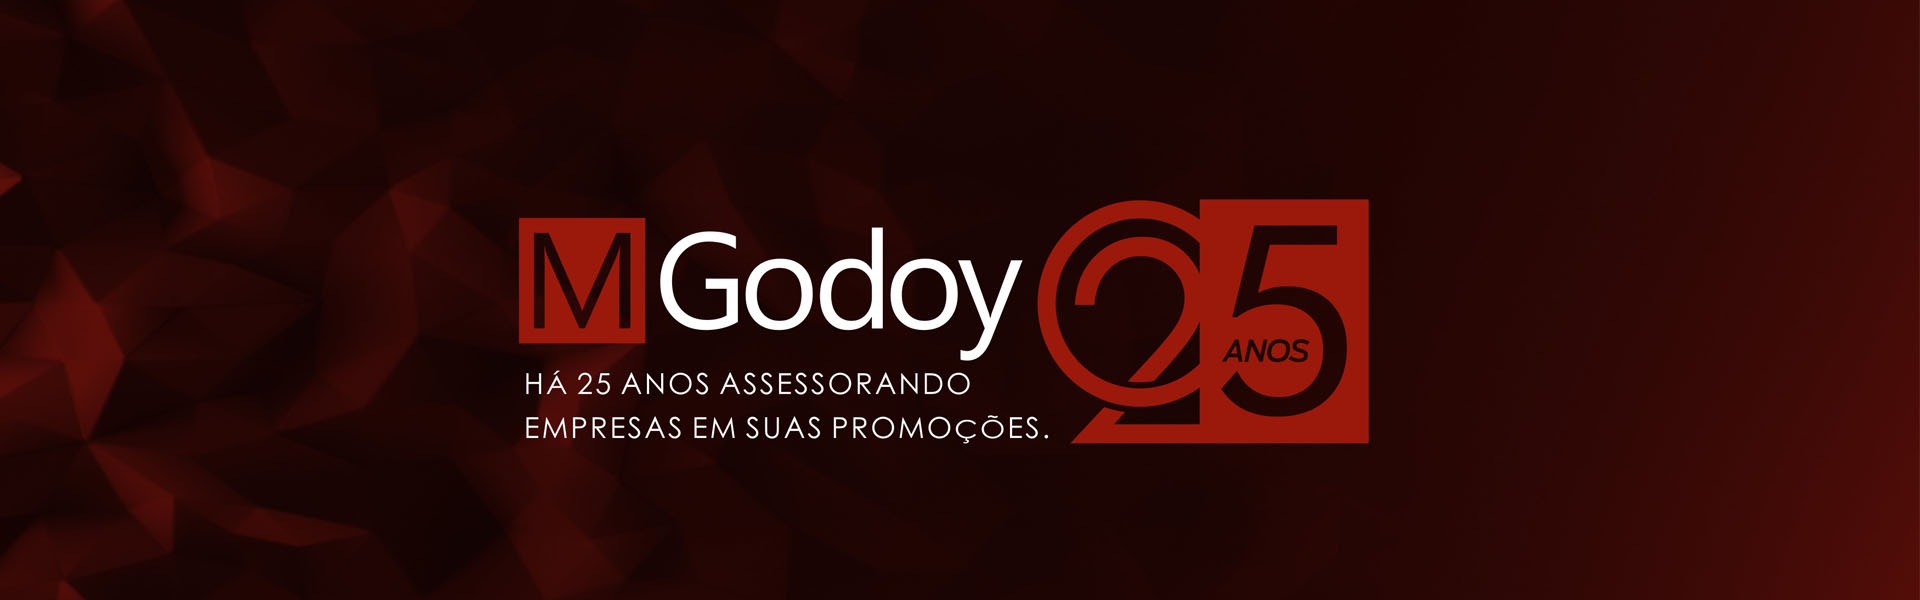 M.Godoy